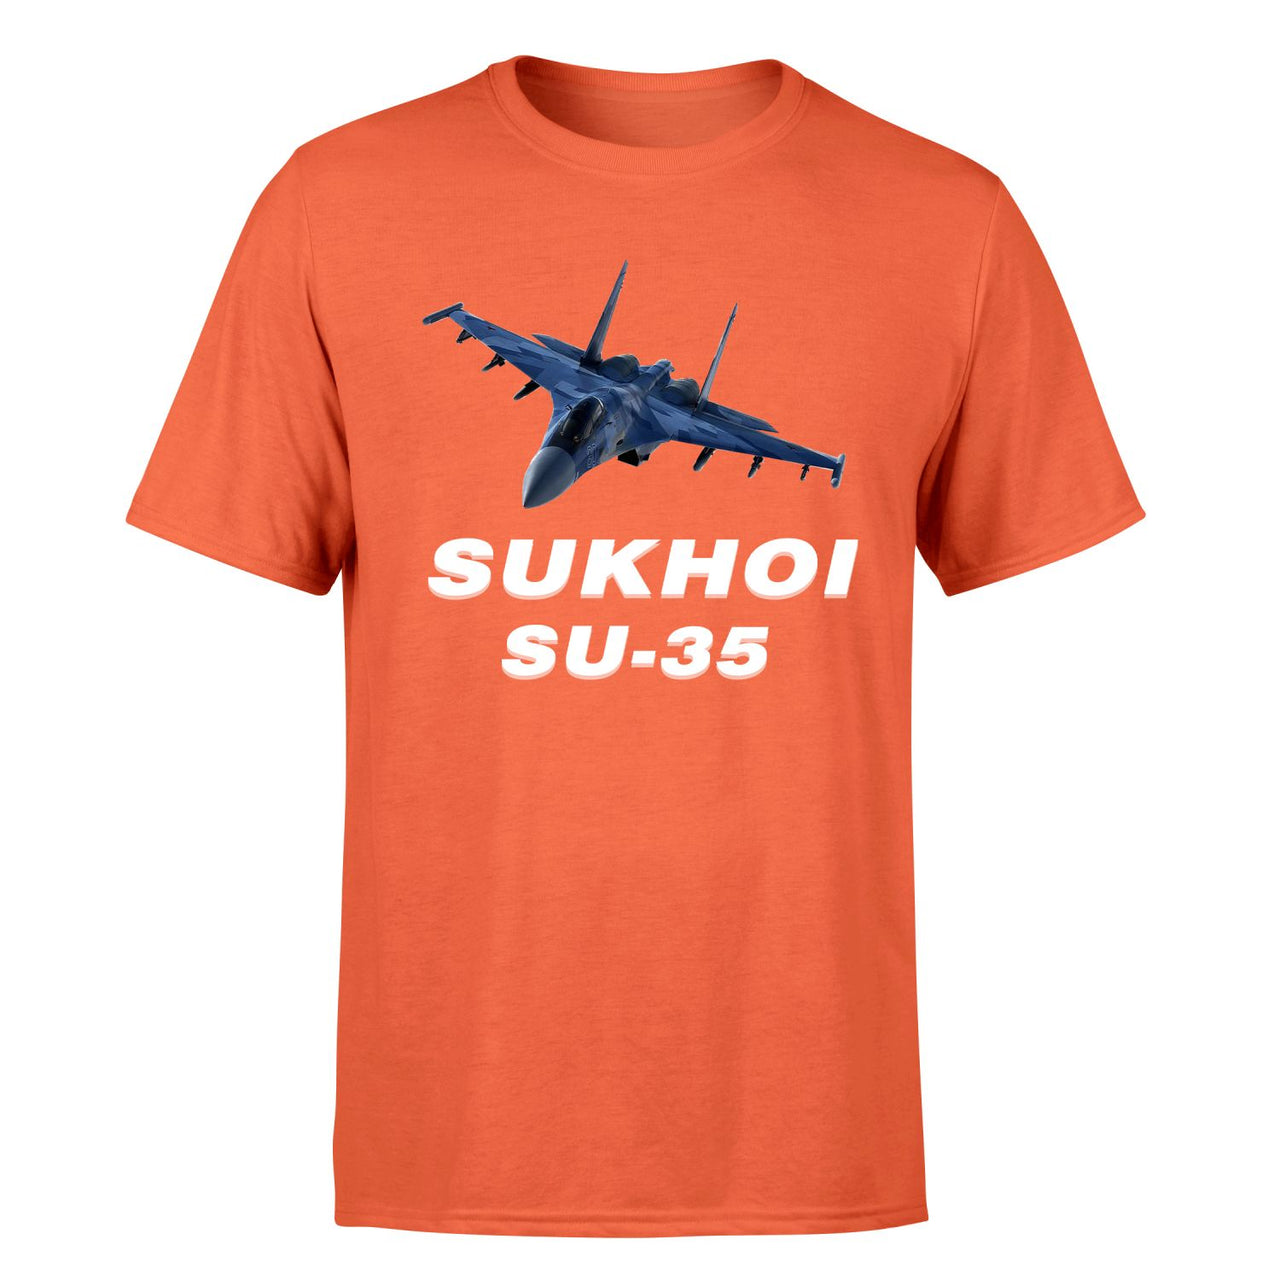 The Sukhoi SU-35 Designed T-Shirts